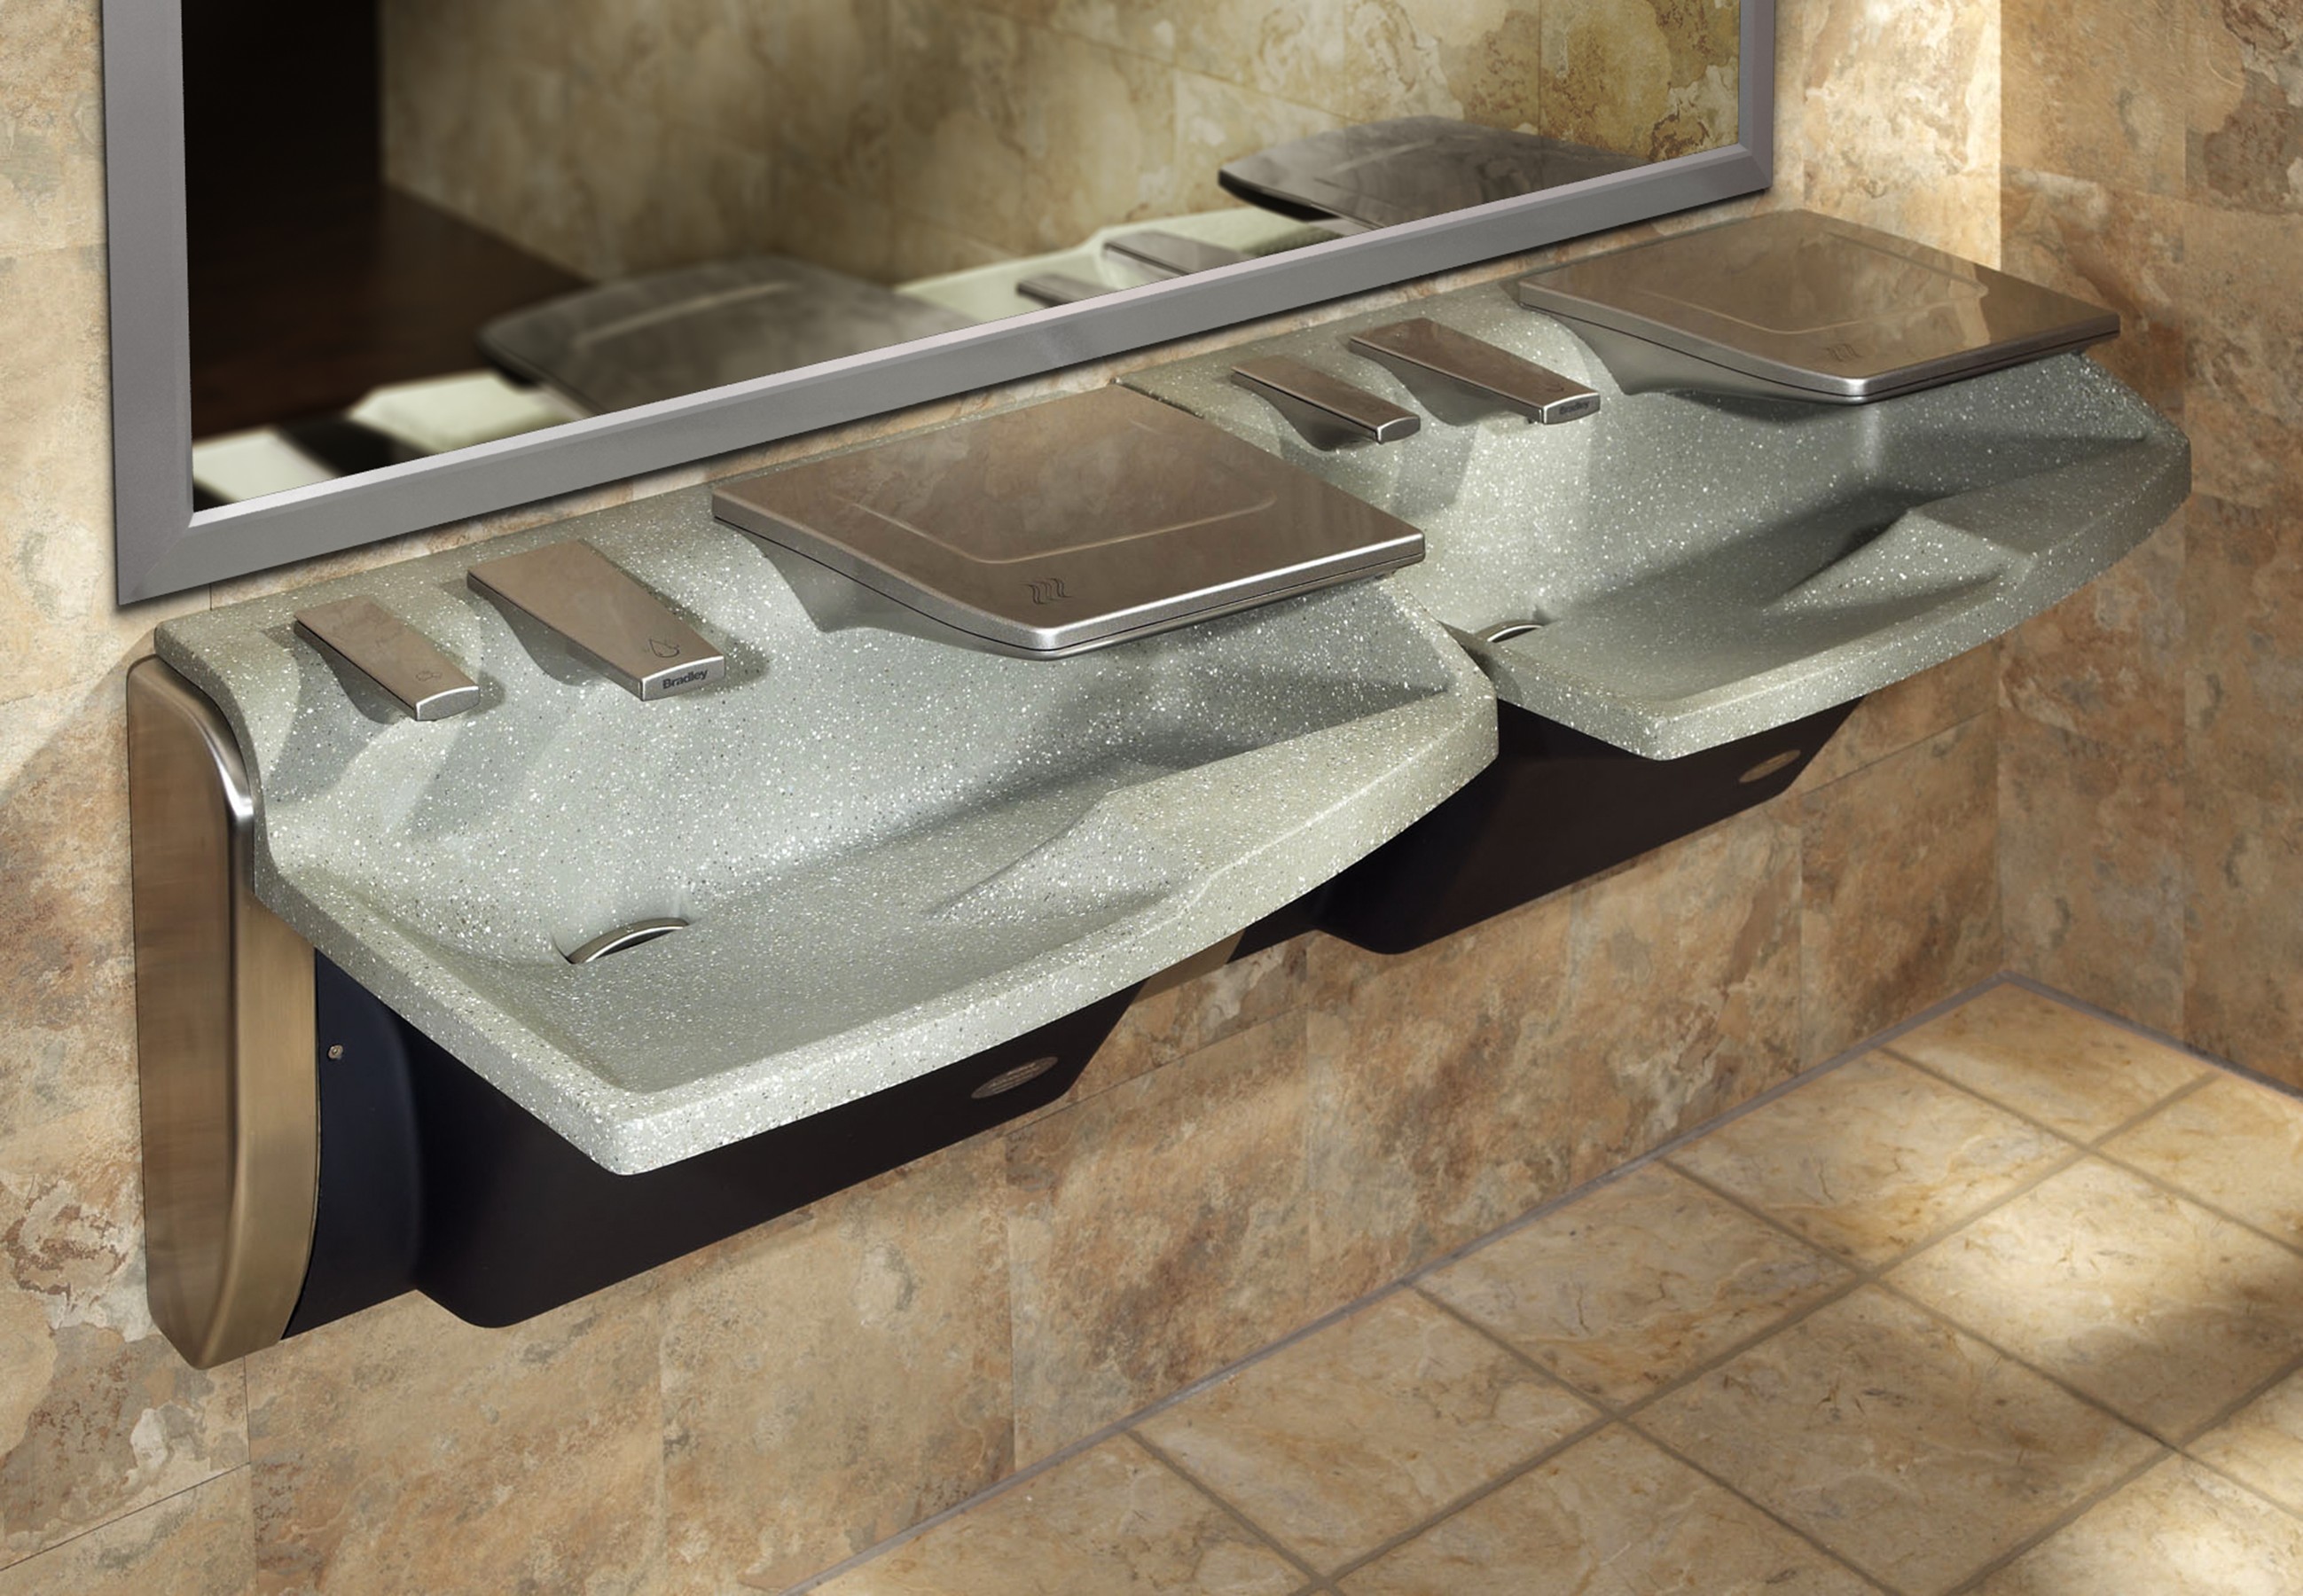 View Bradley Advocate AV-Series Hand Washing Stations for Innovative Green Toilet Room Design